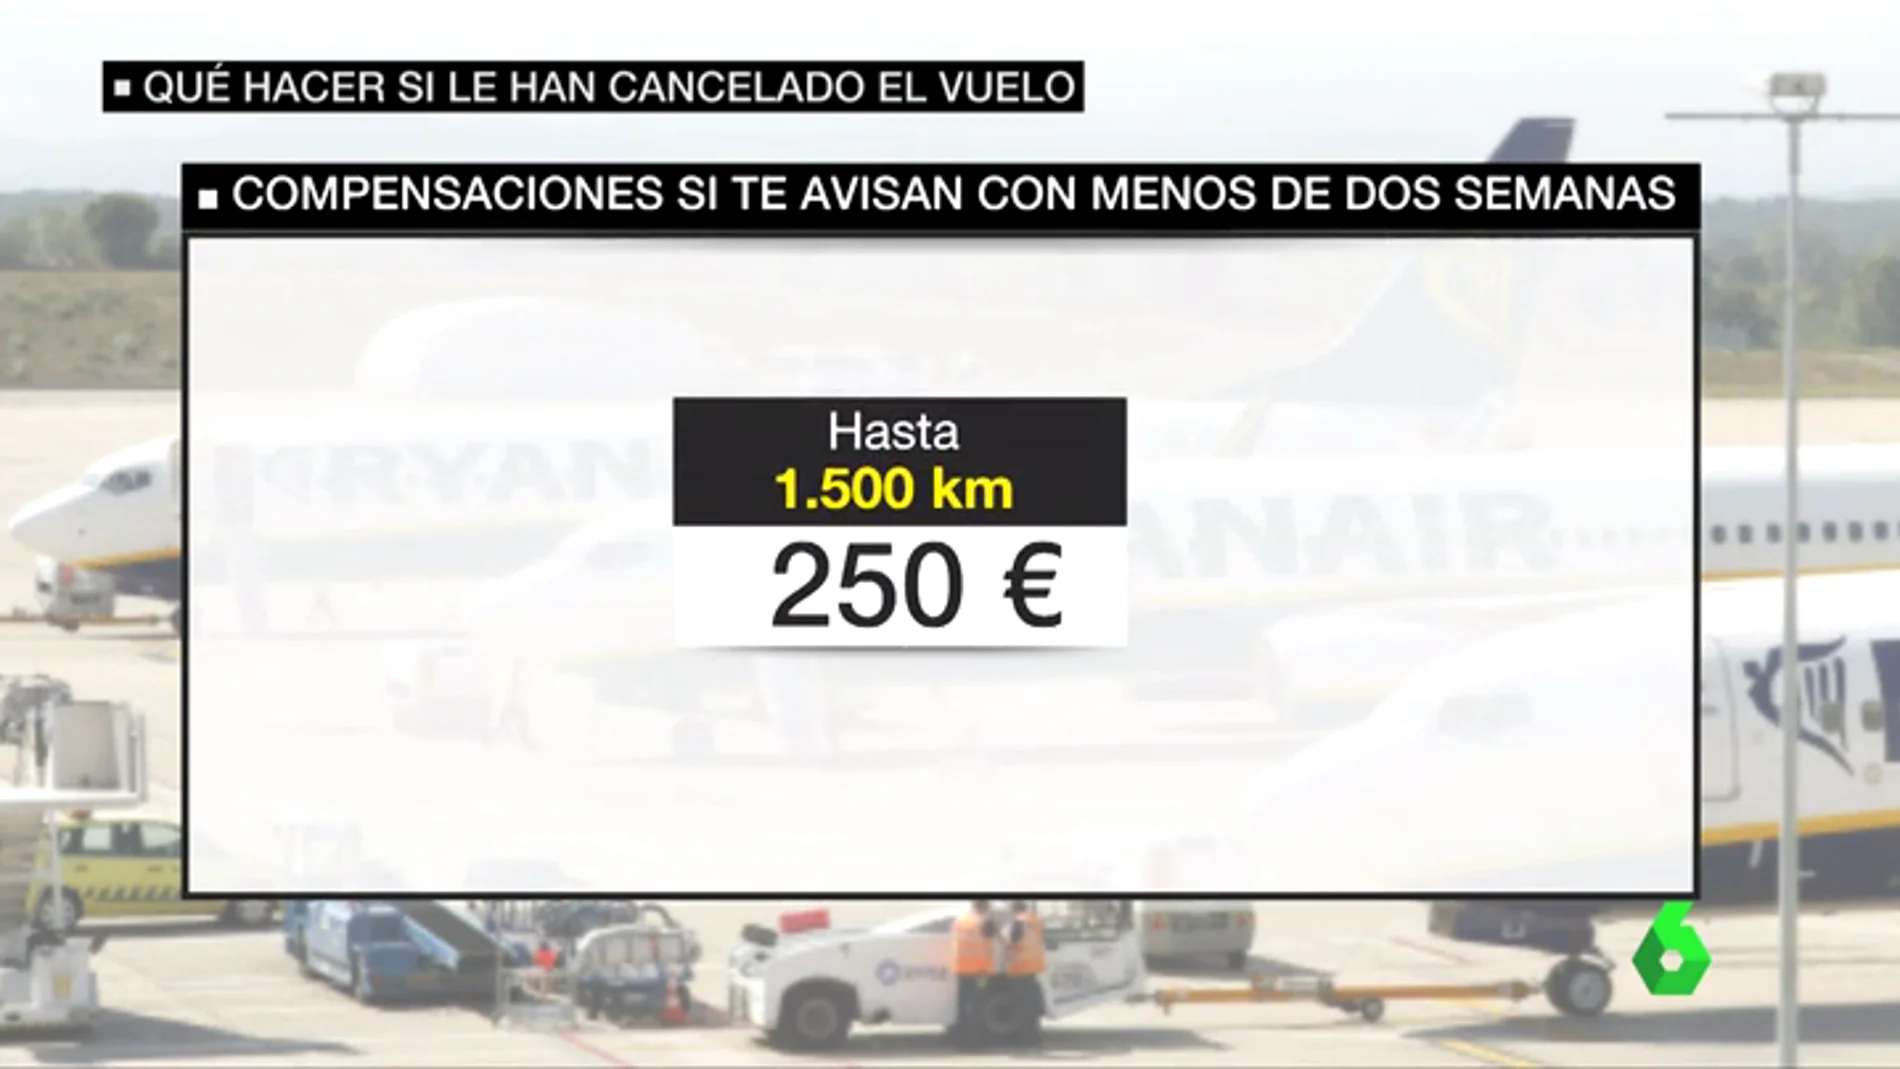 Estas son las compensaciones que le corresponden a los afectados por las cancelaciones de Ryanair